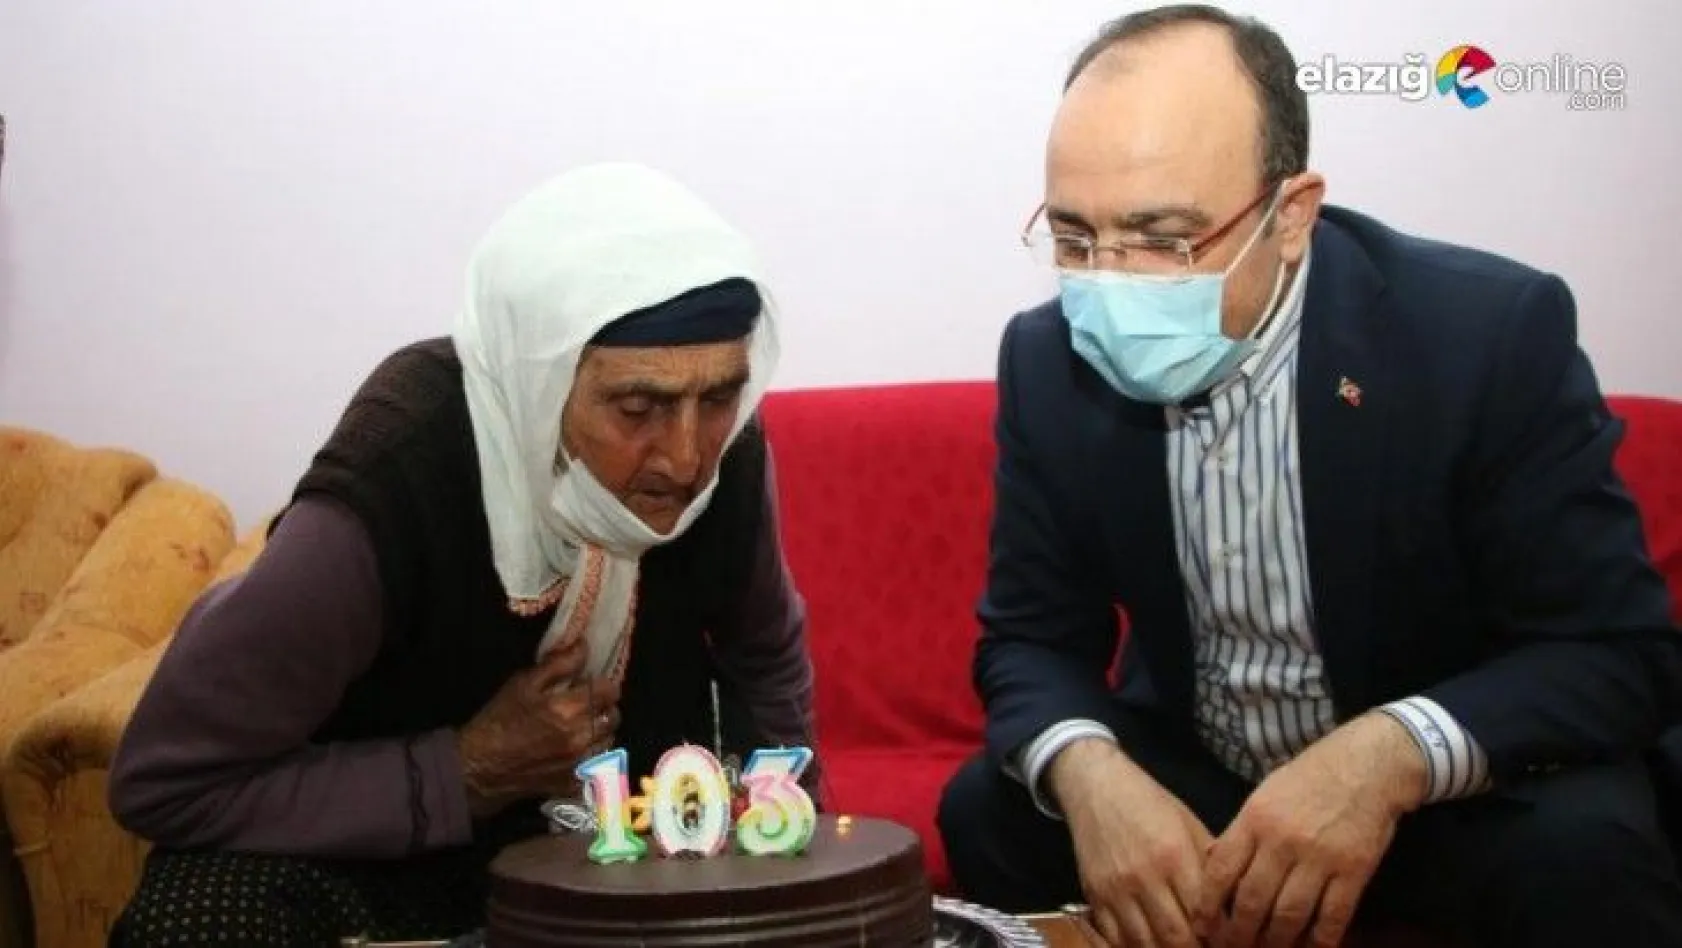 Elazığ'da ilk defa doğum günü kutlayan Şahide nine 103 yaşına girdi